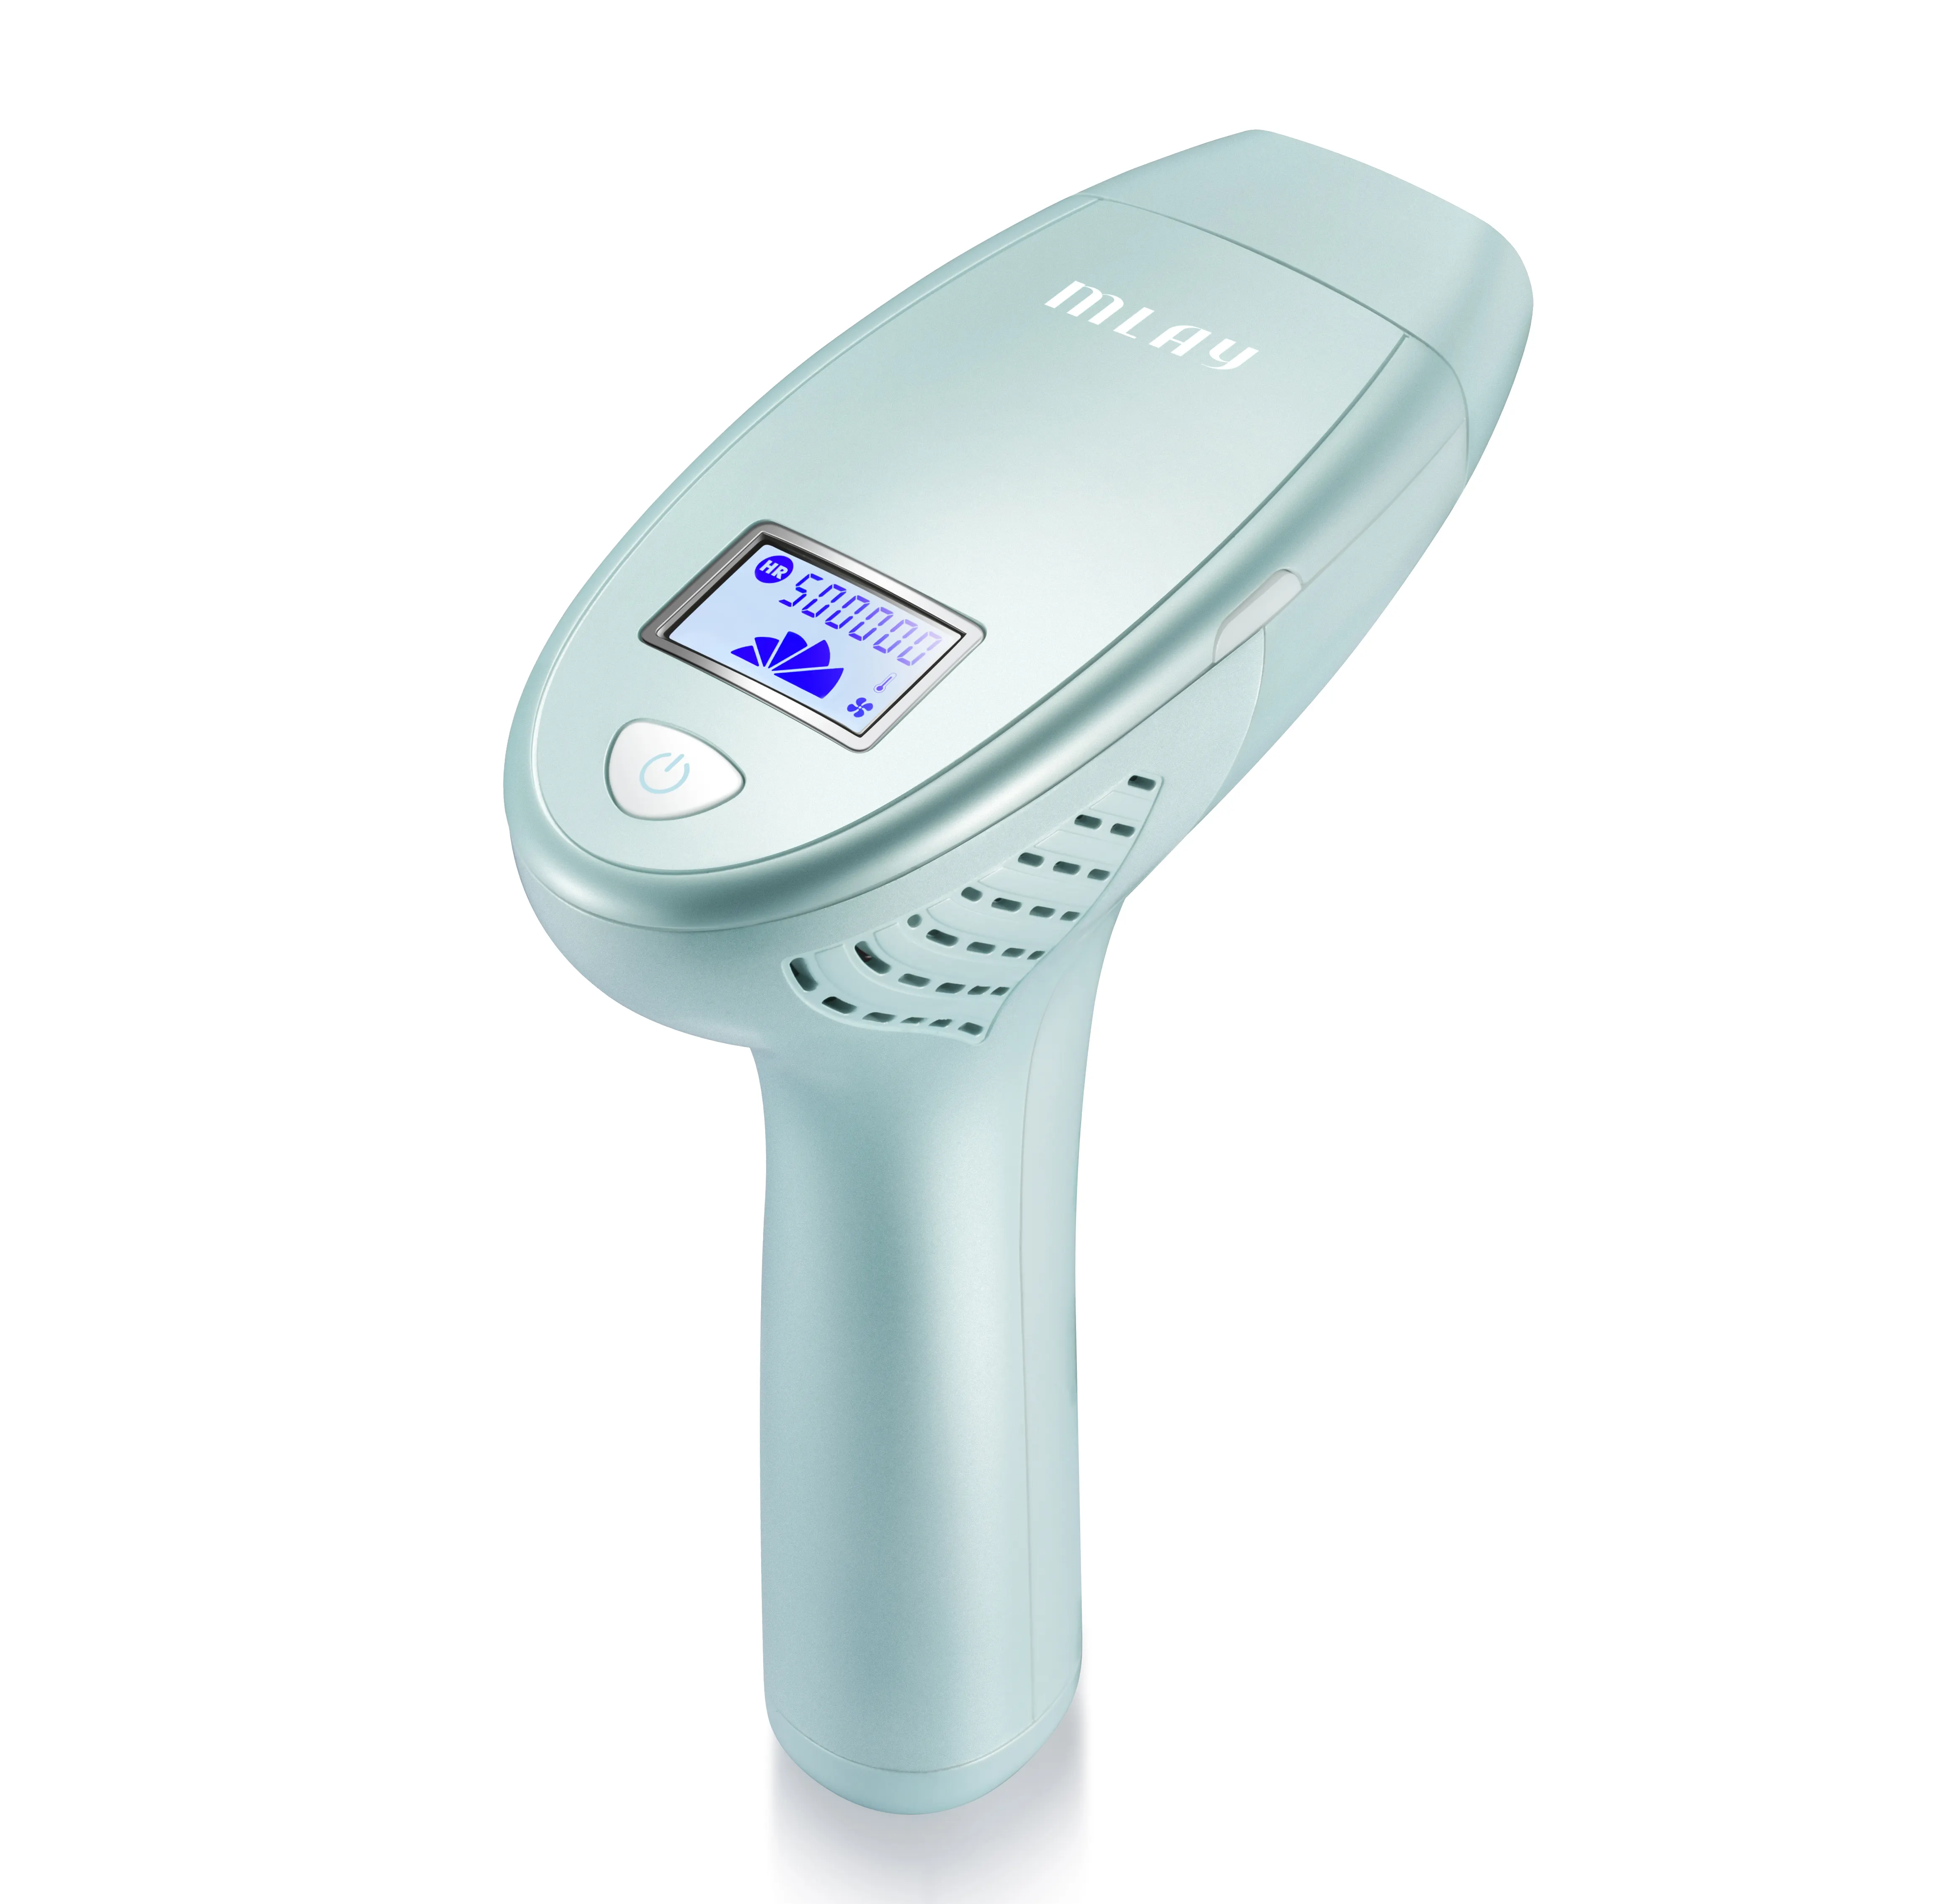 Vendita calda Mlay palmare IPL dispositivo di epilazione portatile Laser portatile per il ringiovanimento permanente della pelle per zona Bikini